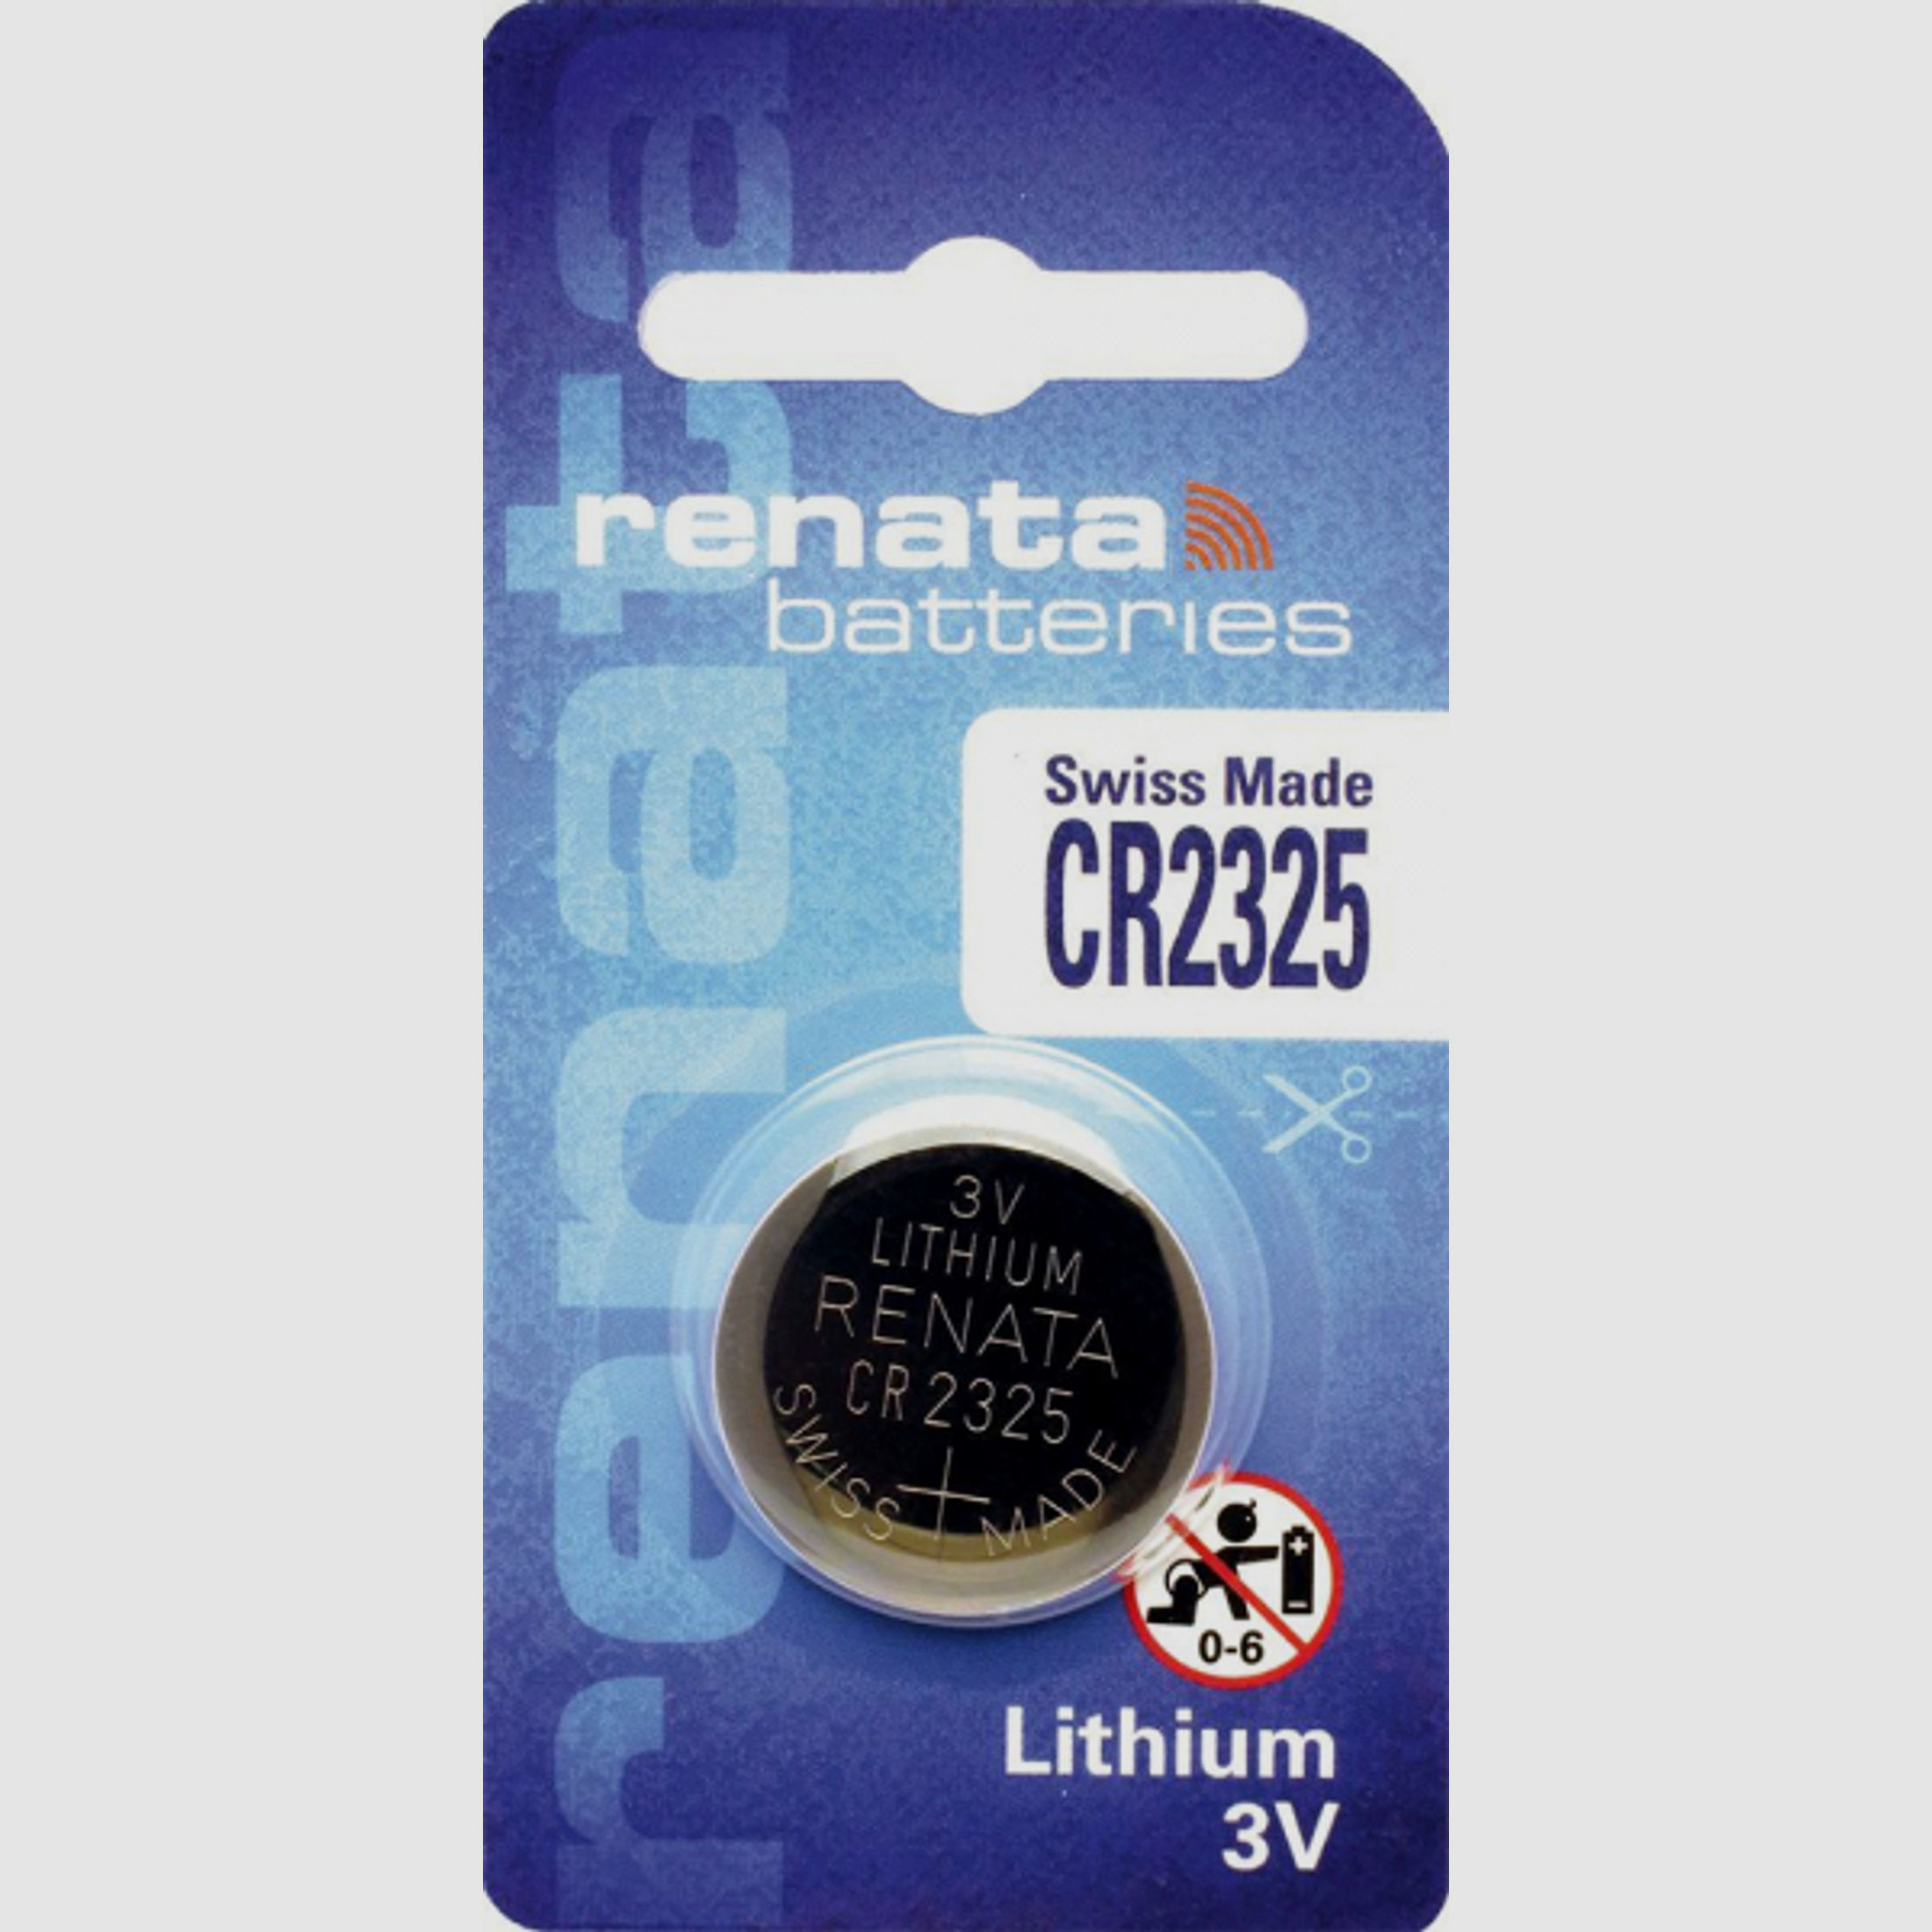 1 x RENATA 3V Lithium Knopfzelle CR2325 (1 x 1er Blister) | SWISS MADE | Armbanduhren, Höhenmesser